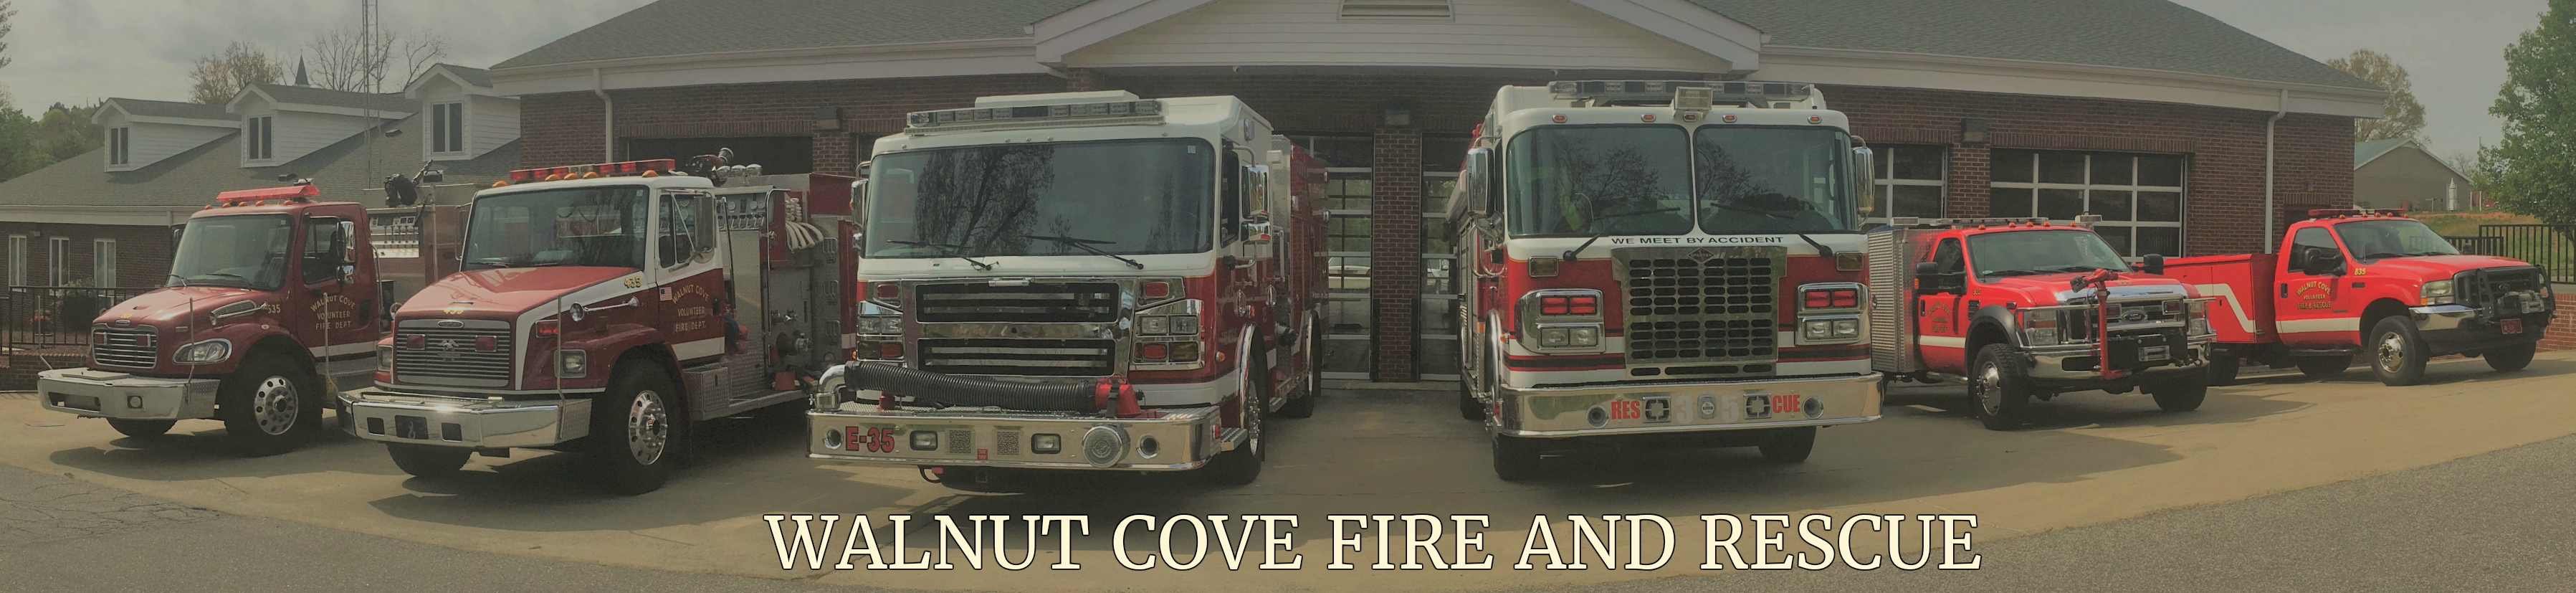 Walnut Cove Volunteer Fire & Rescue